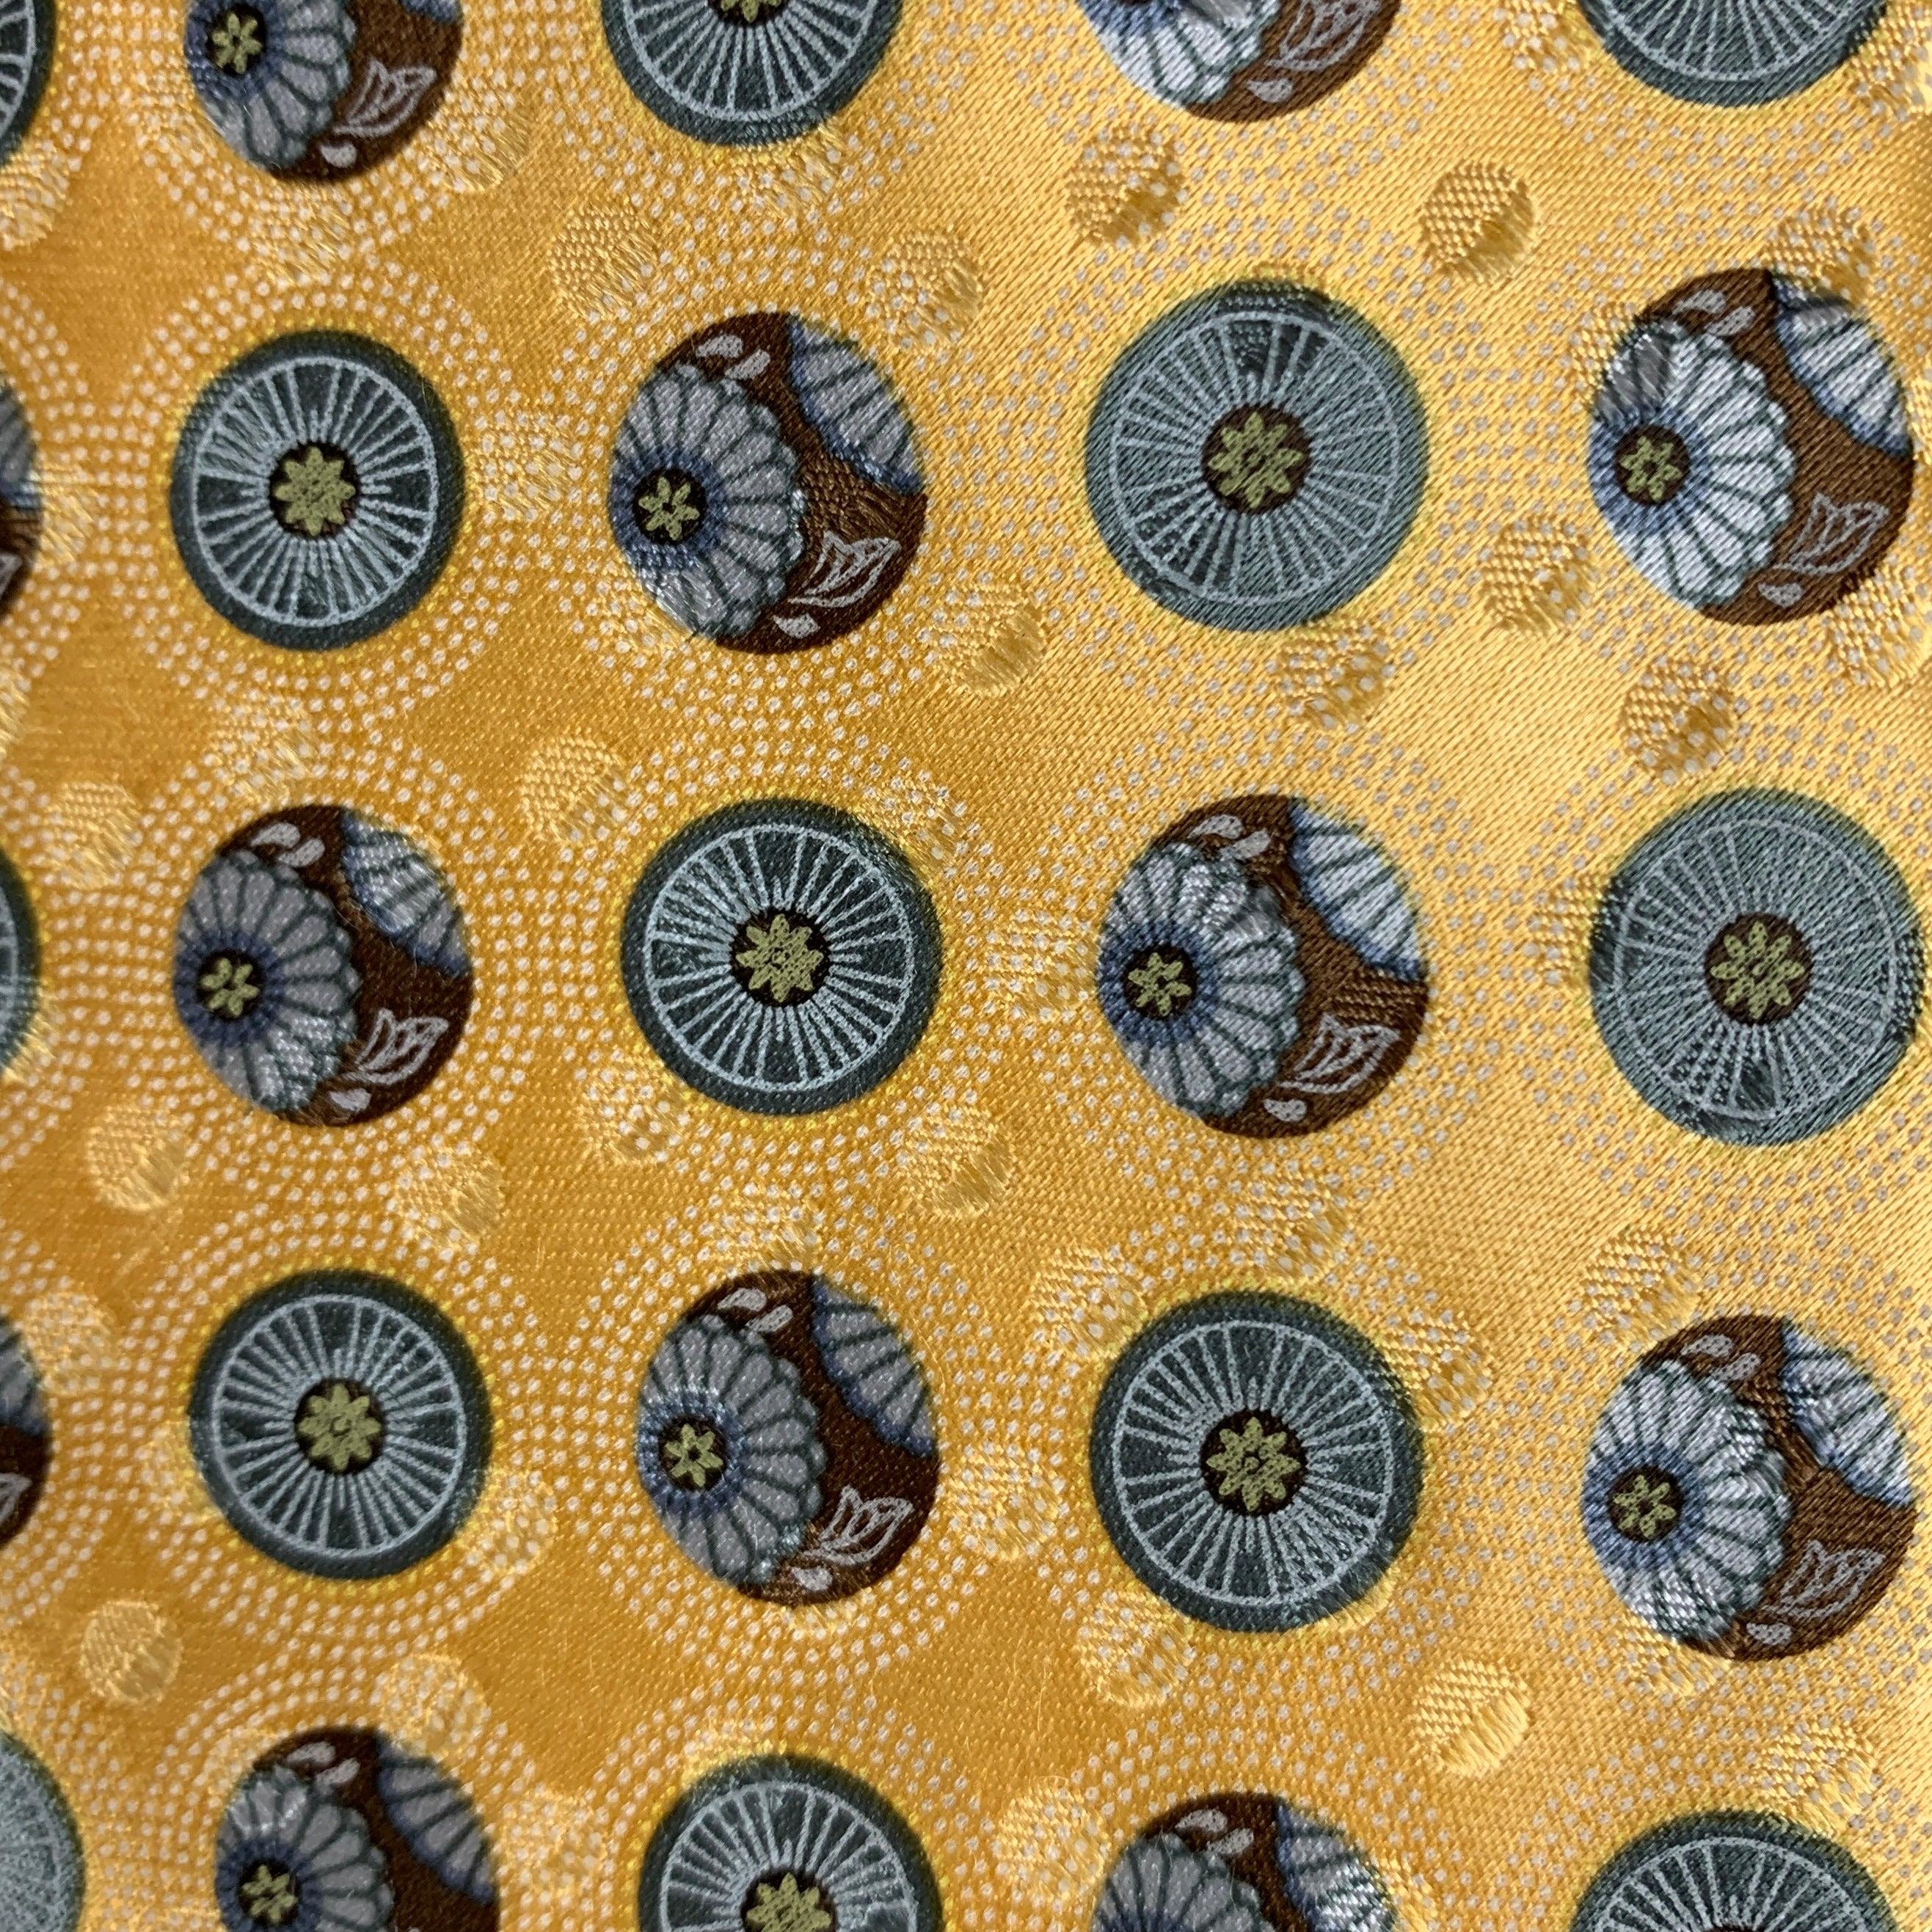 ERMENEGILDO ZEGNA Krawatte in Gelb mit abstrakten floralen Kreisen. 100% Seide. Hergestellt in Italien.
Sehr guter gebrauchter Zustand.
 

Abmessungen: 
  Breite: 3 Zoll Länge: 60 Zoll 




  
  
 
Sui Generis-Referenz: 124764
Kategorie: